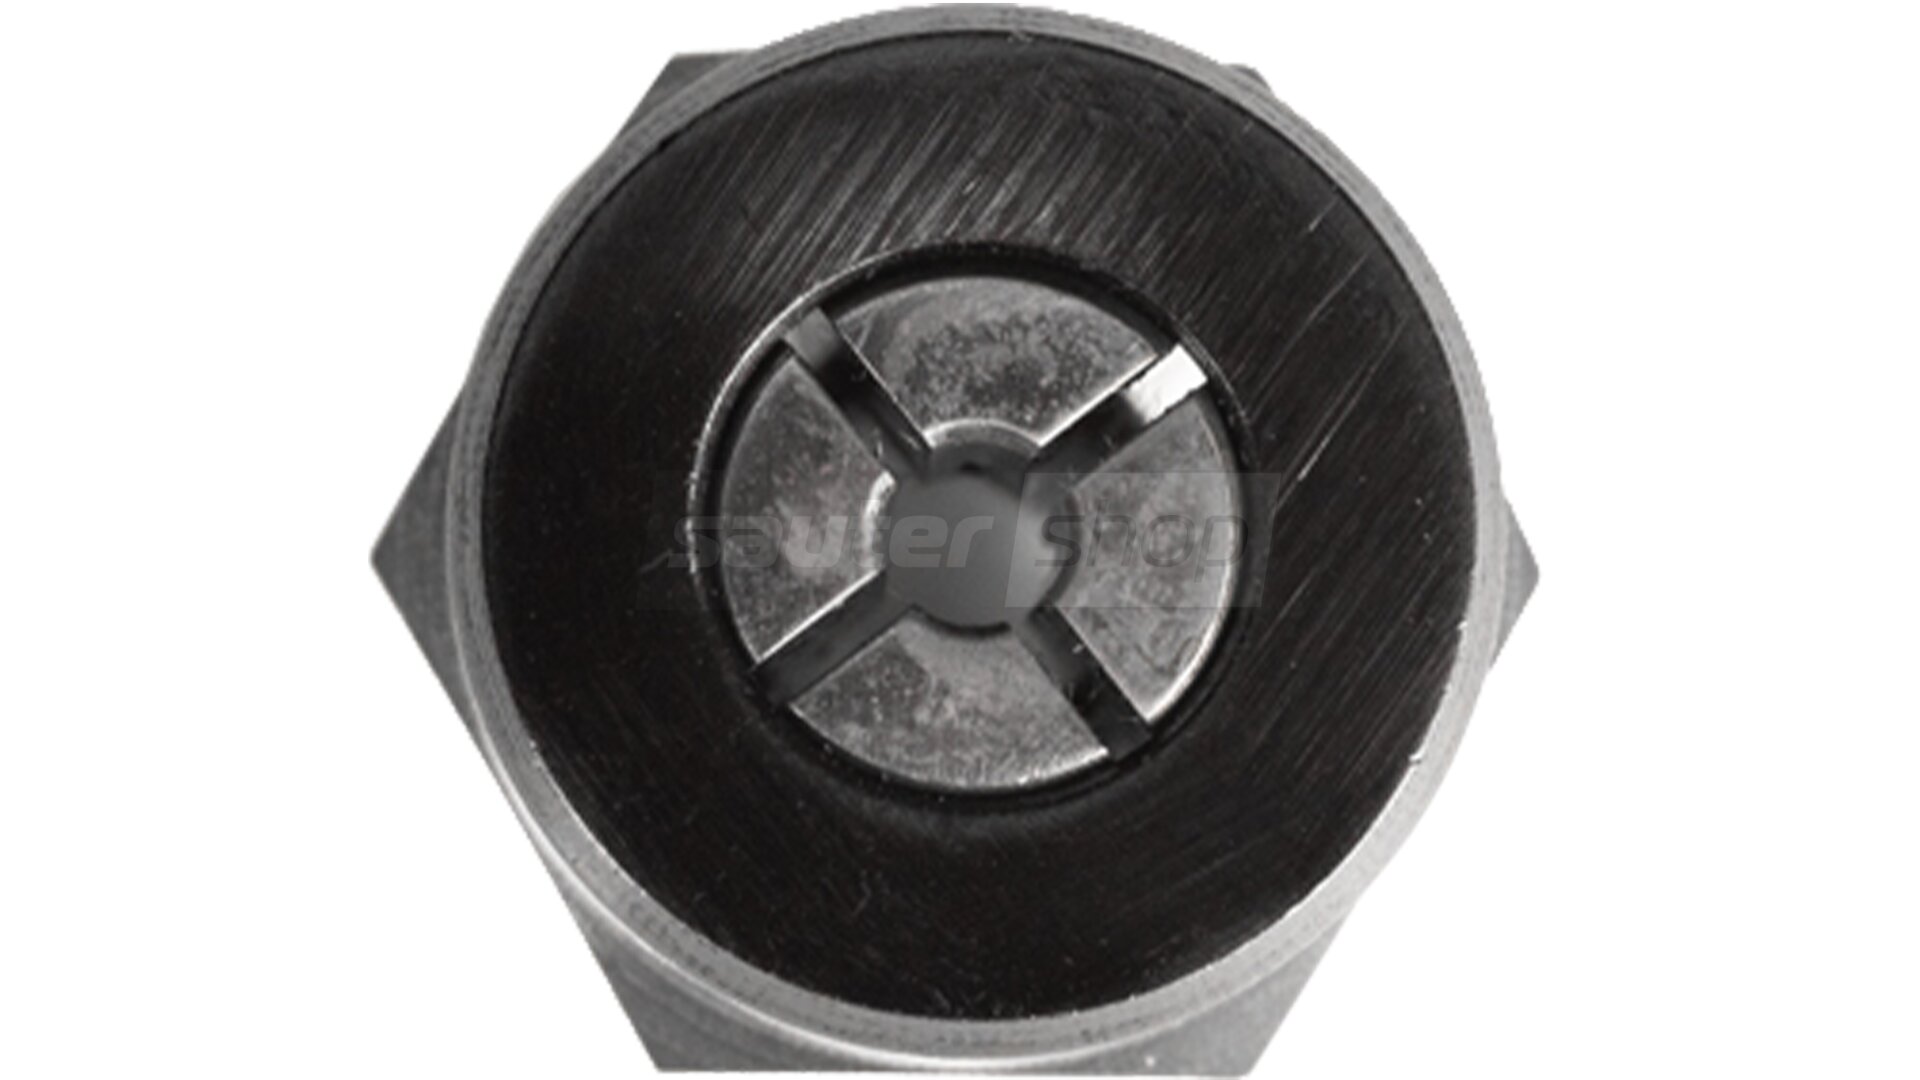 Pince de serrage ⅛ po (3,175 mm) avec écrou